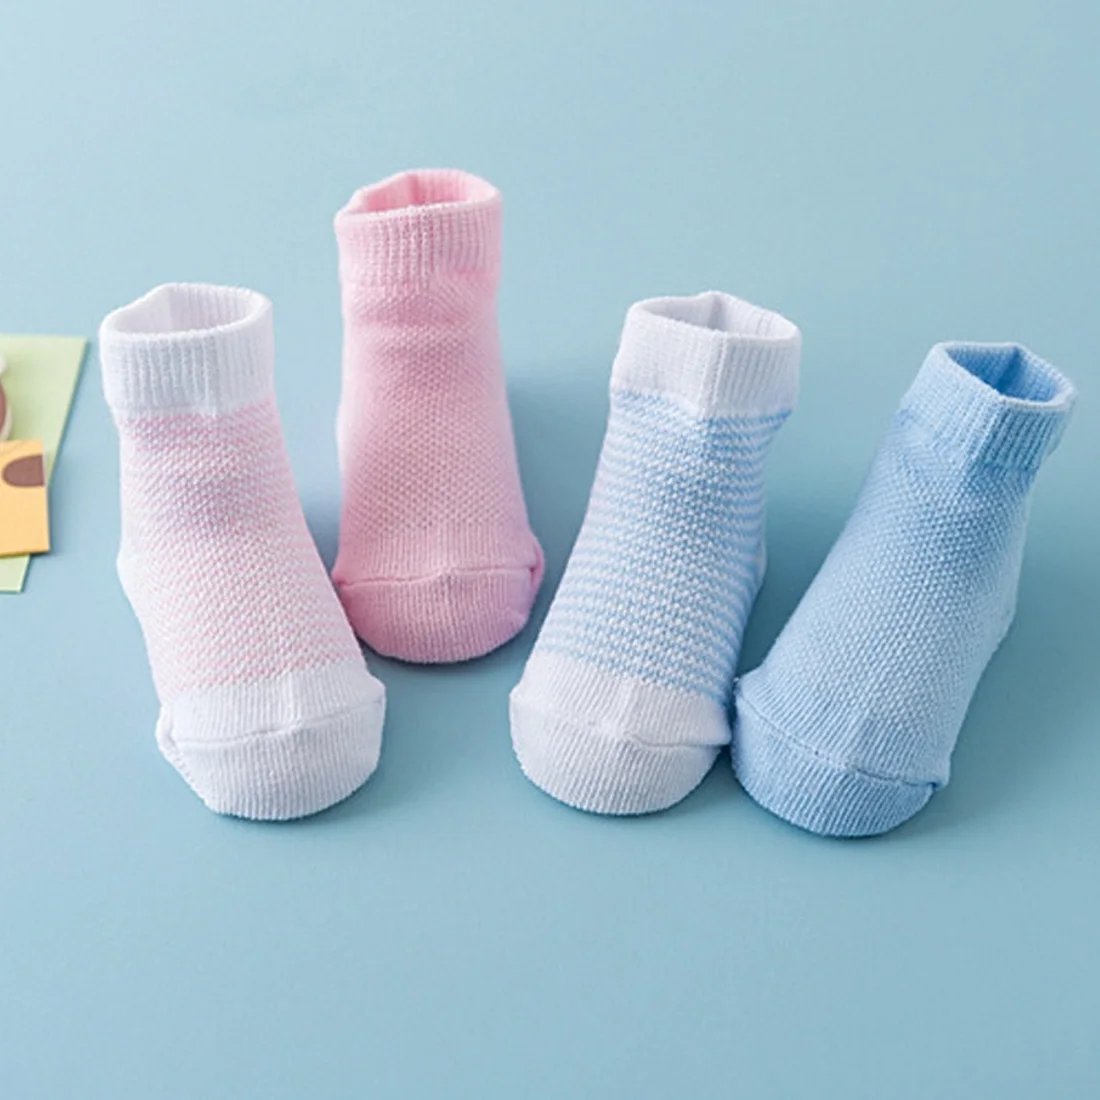 Дышащие эластичные перчатки с защитой от царапин, носки, детские варежки, перчатки, носки для детей